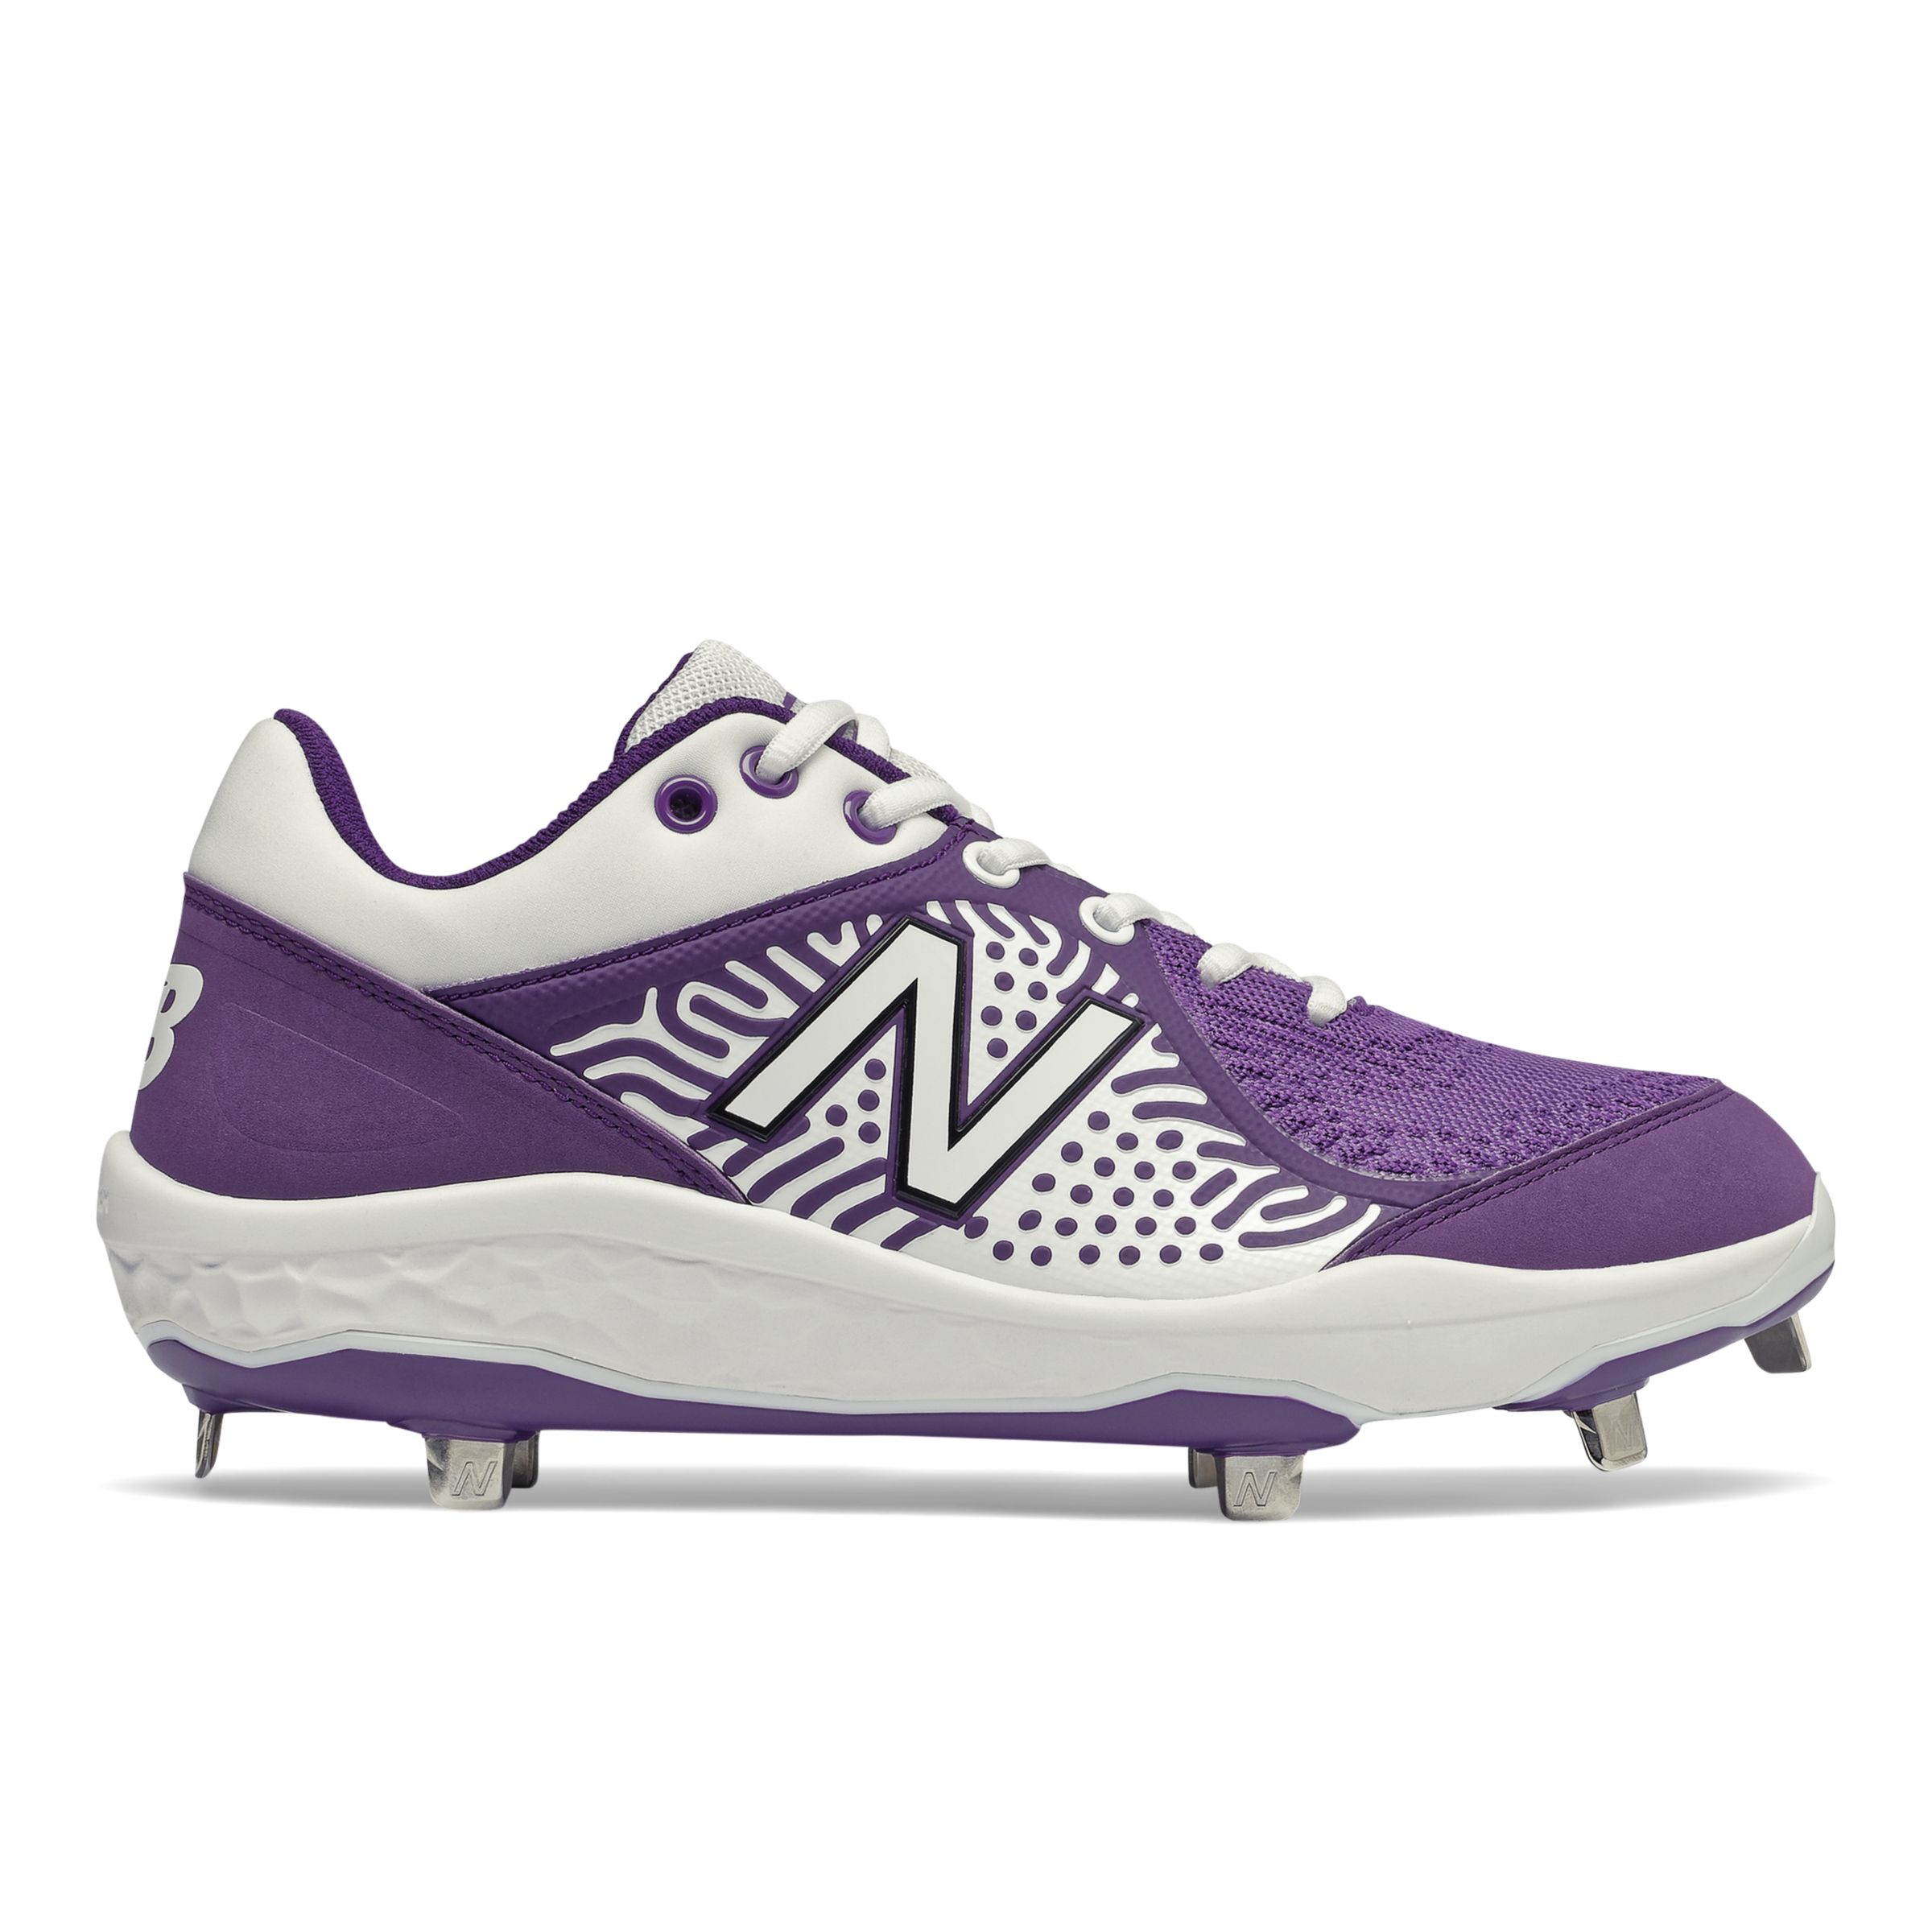 new balance baseball cleats purple